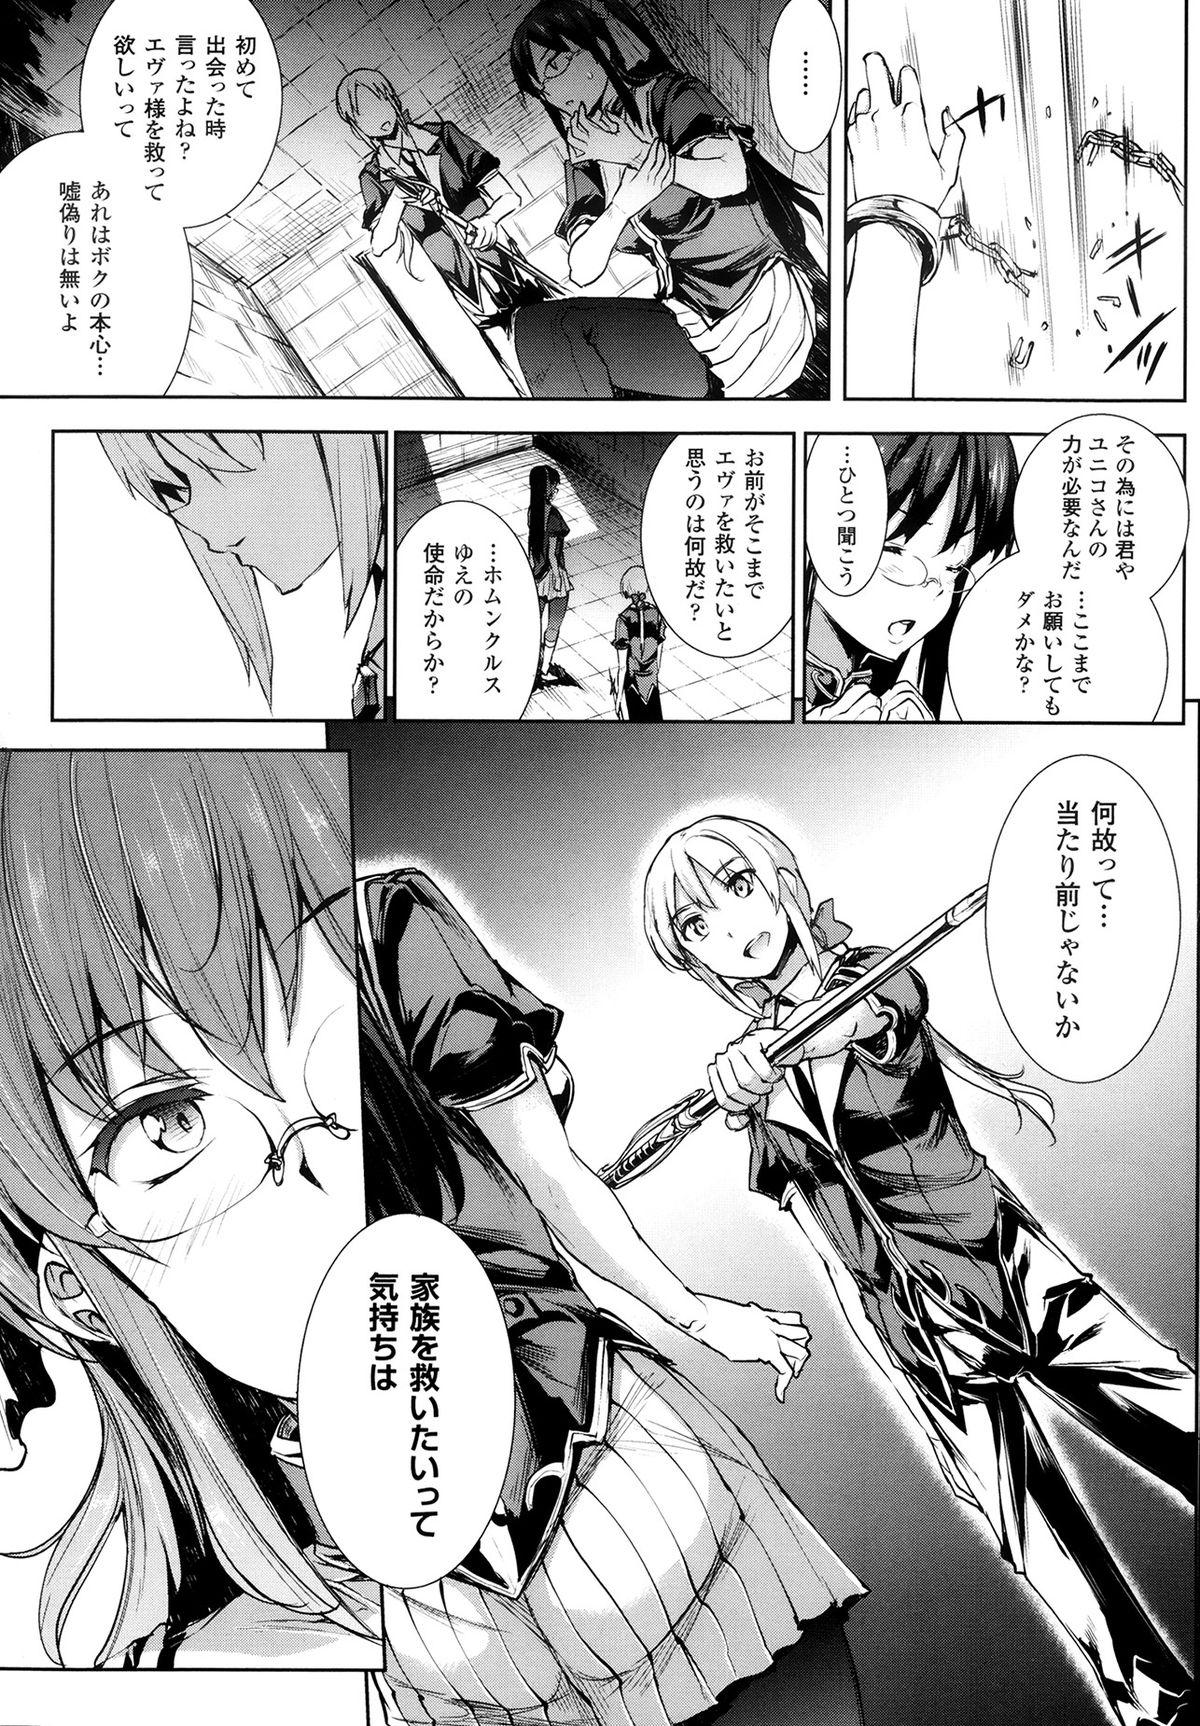 [Erect Sawaru] Shinkyoku no Grimoire -PANDRA saga 2nd story- Ch 07-9.5 32